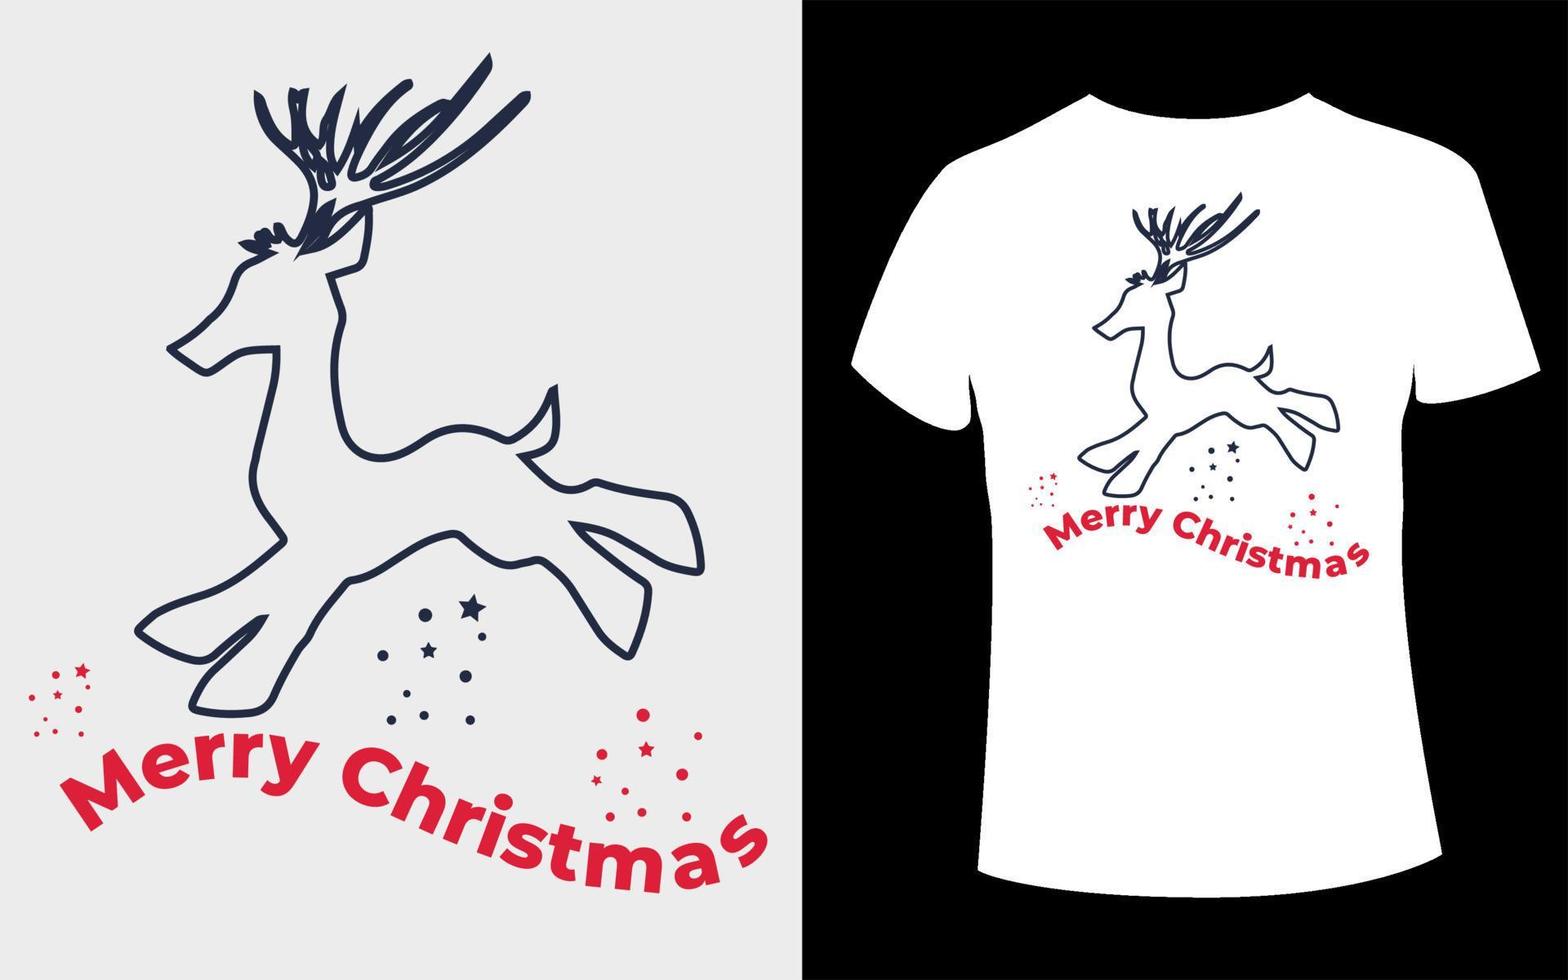 kreatives weihnachtst-shirt-design mit weihnachtsvektor vektor